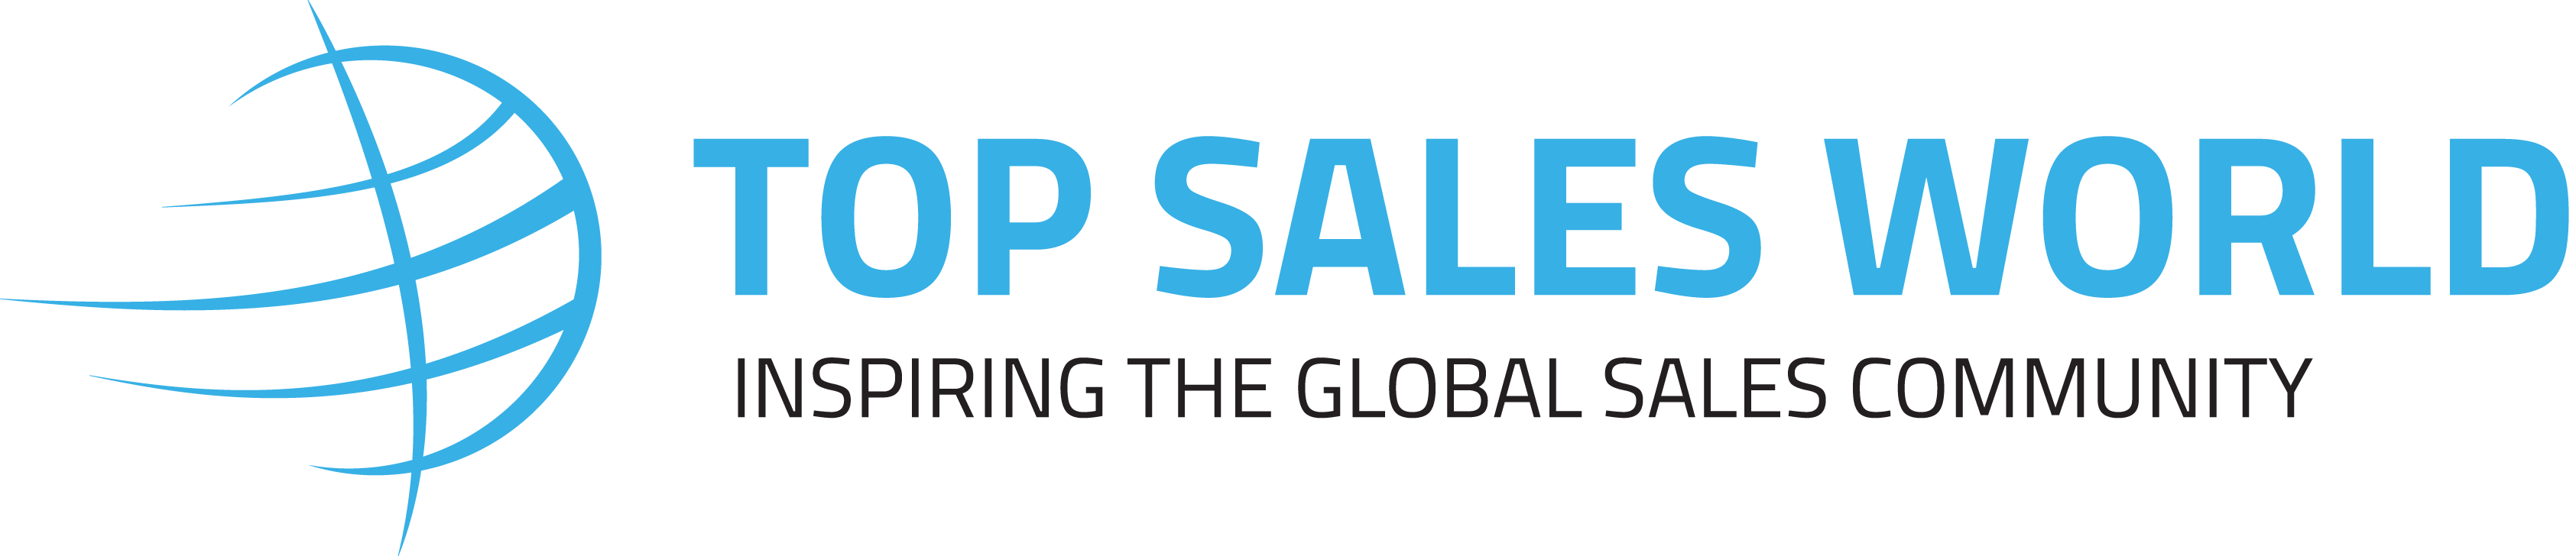 Top Sales World Conference Keynote Speaker - Bob Riefstahl